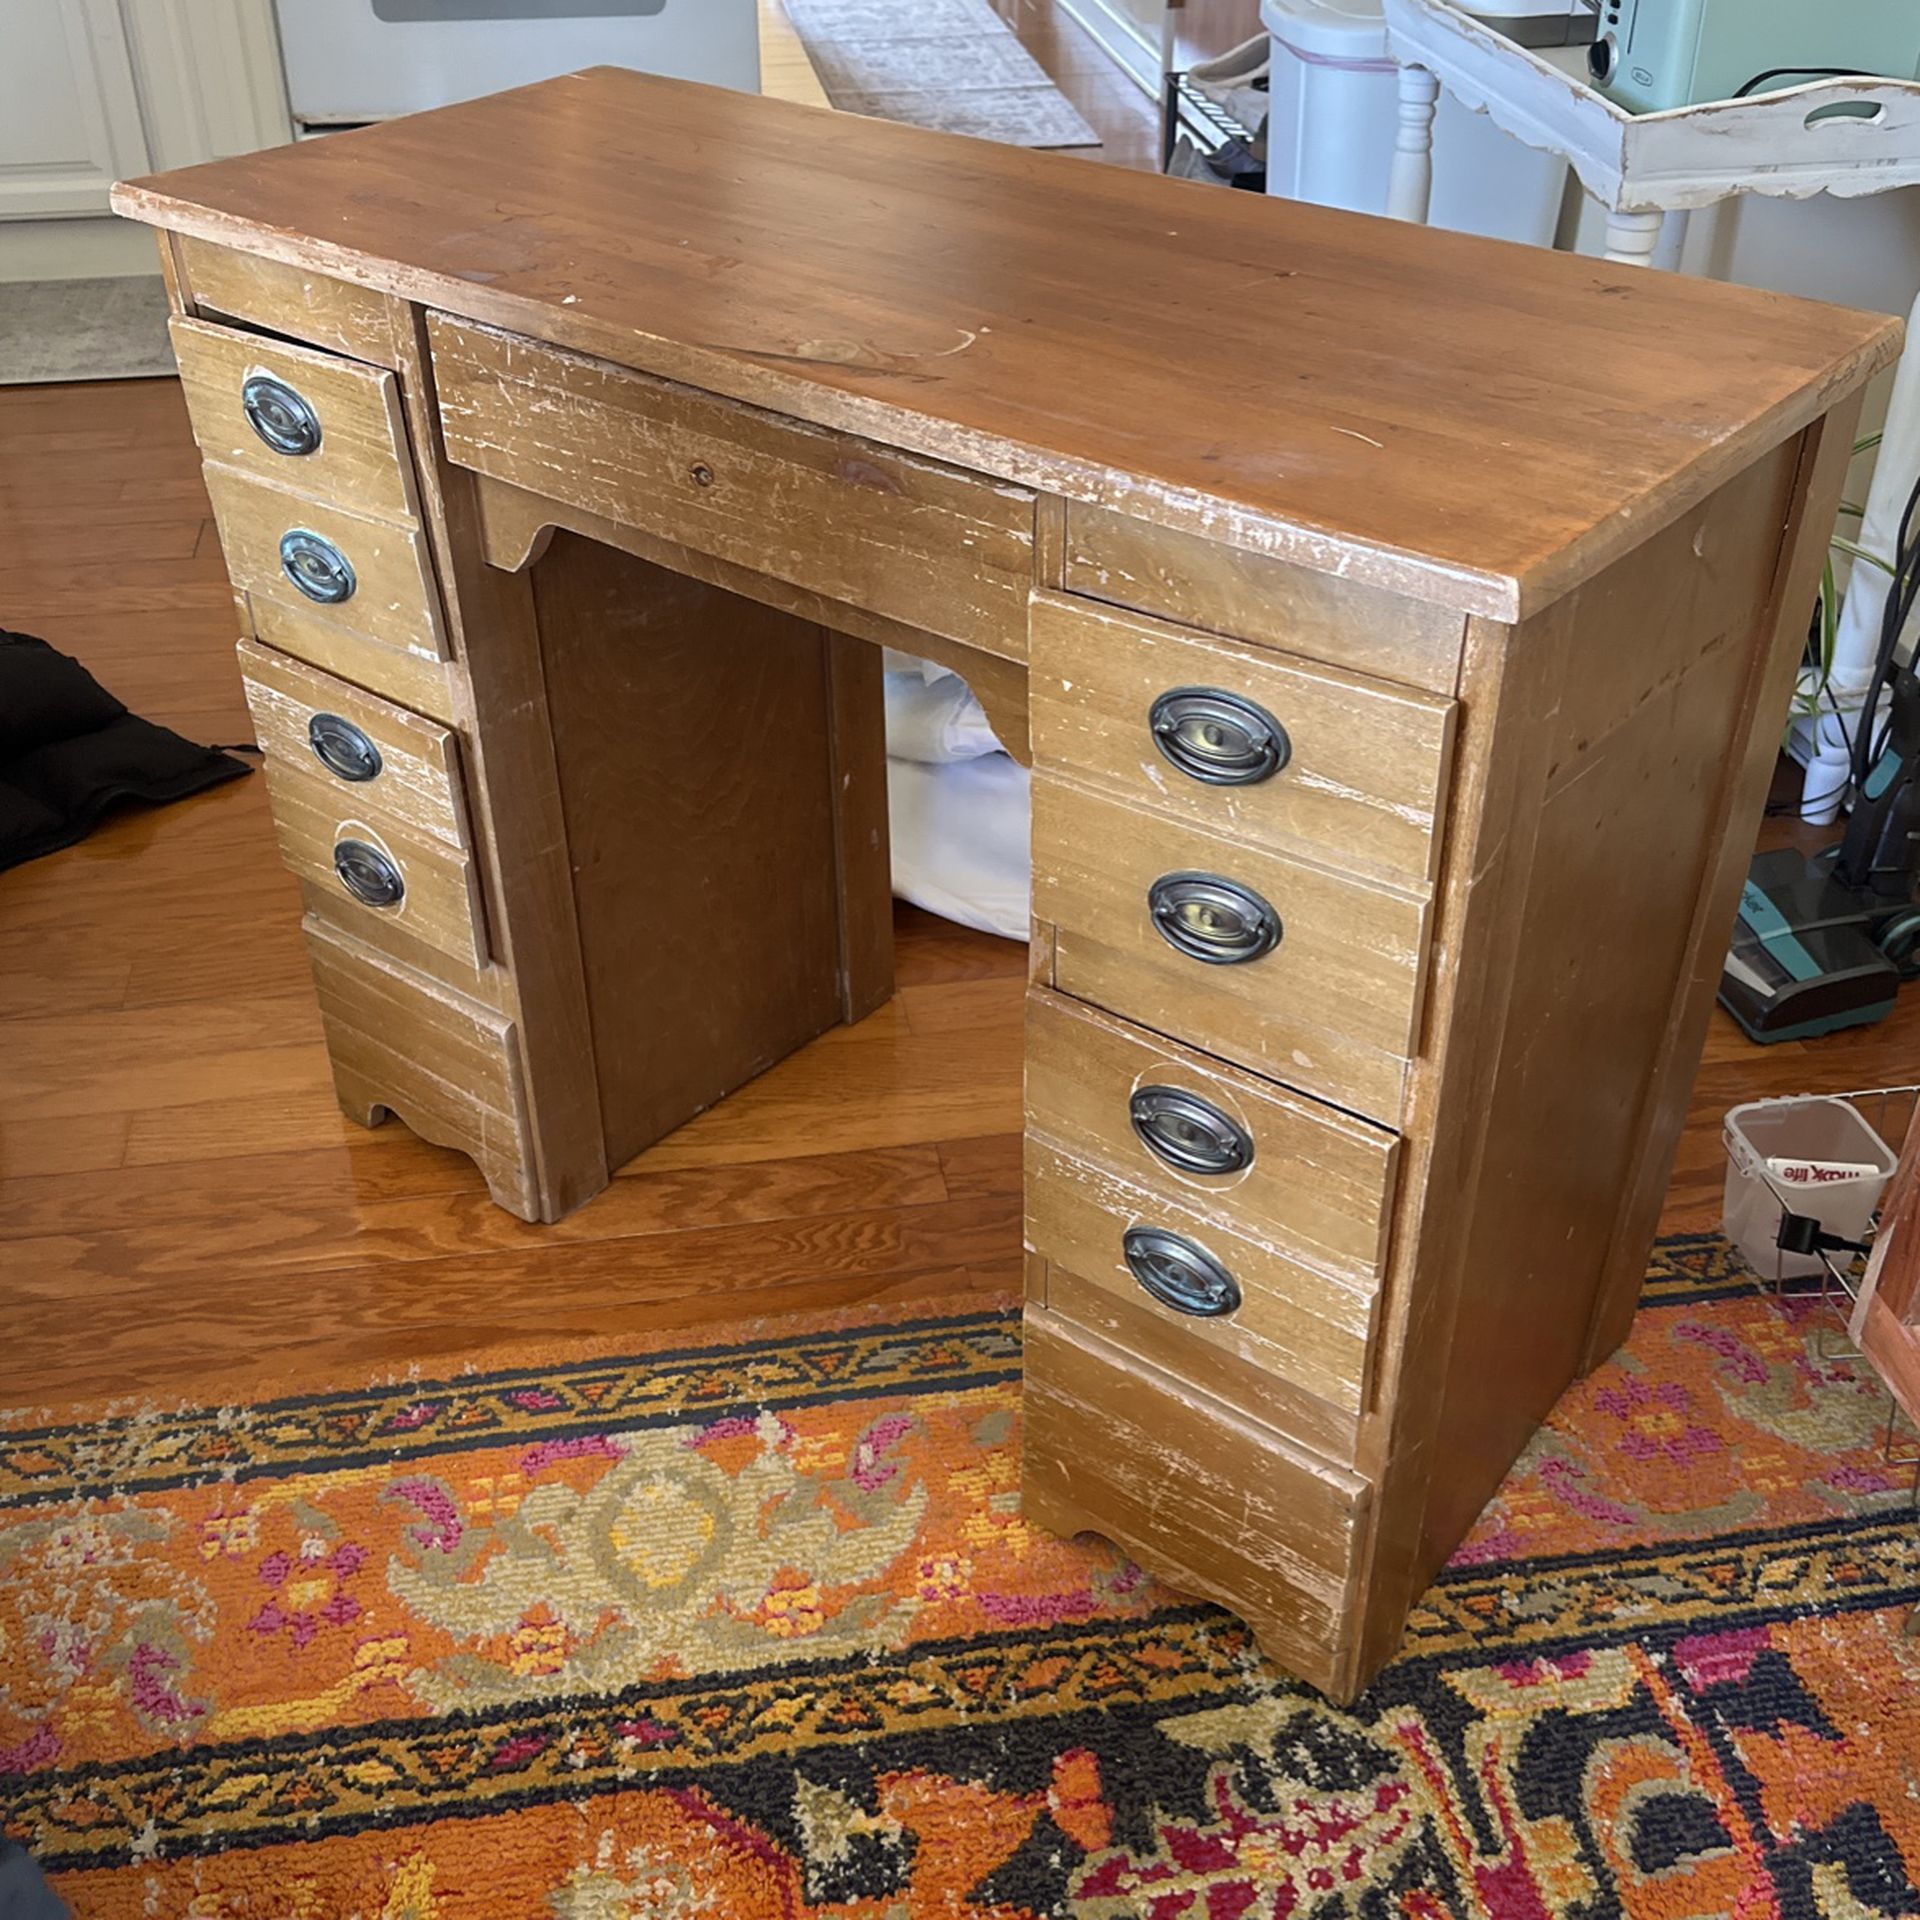 old wooden desk